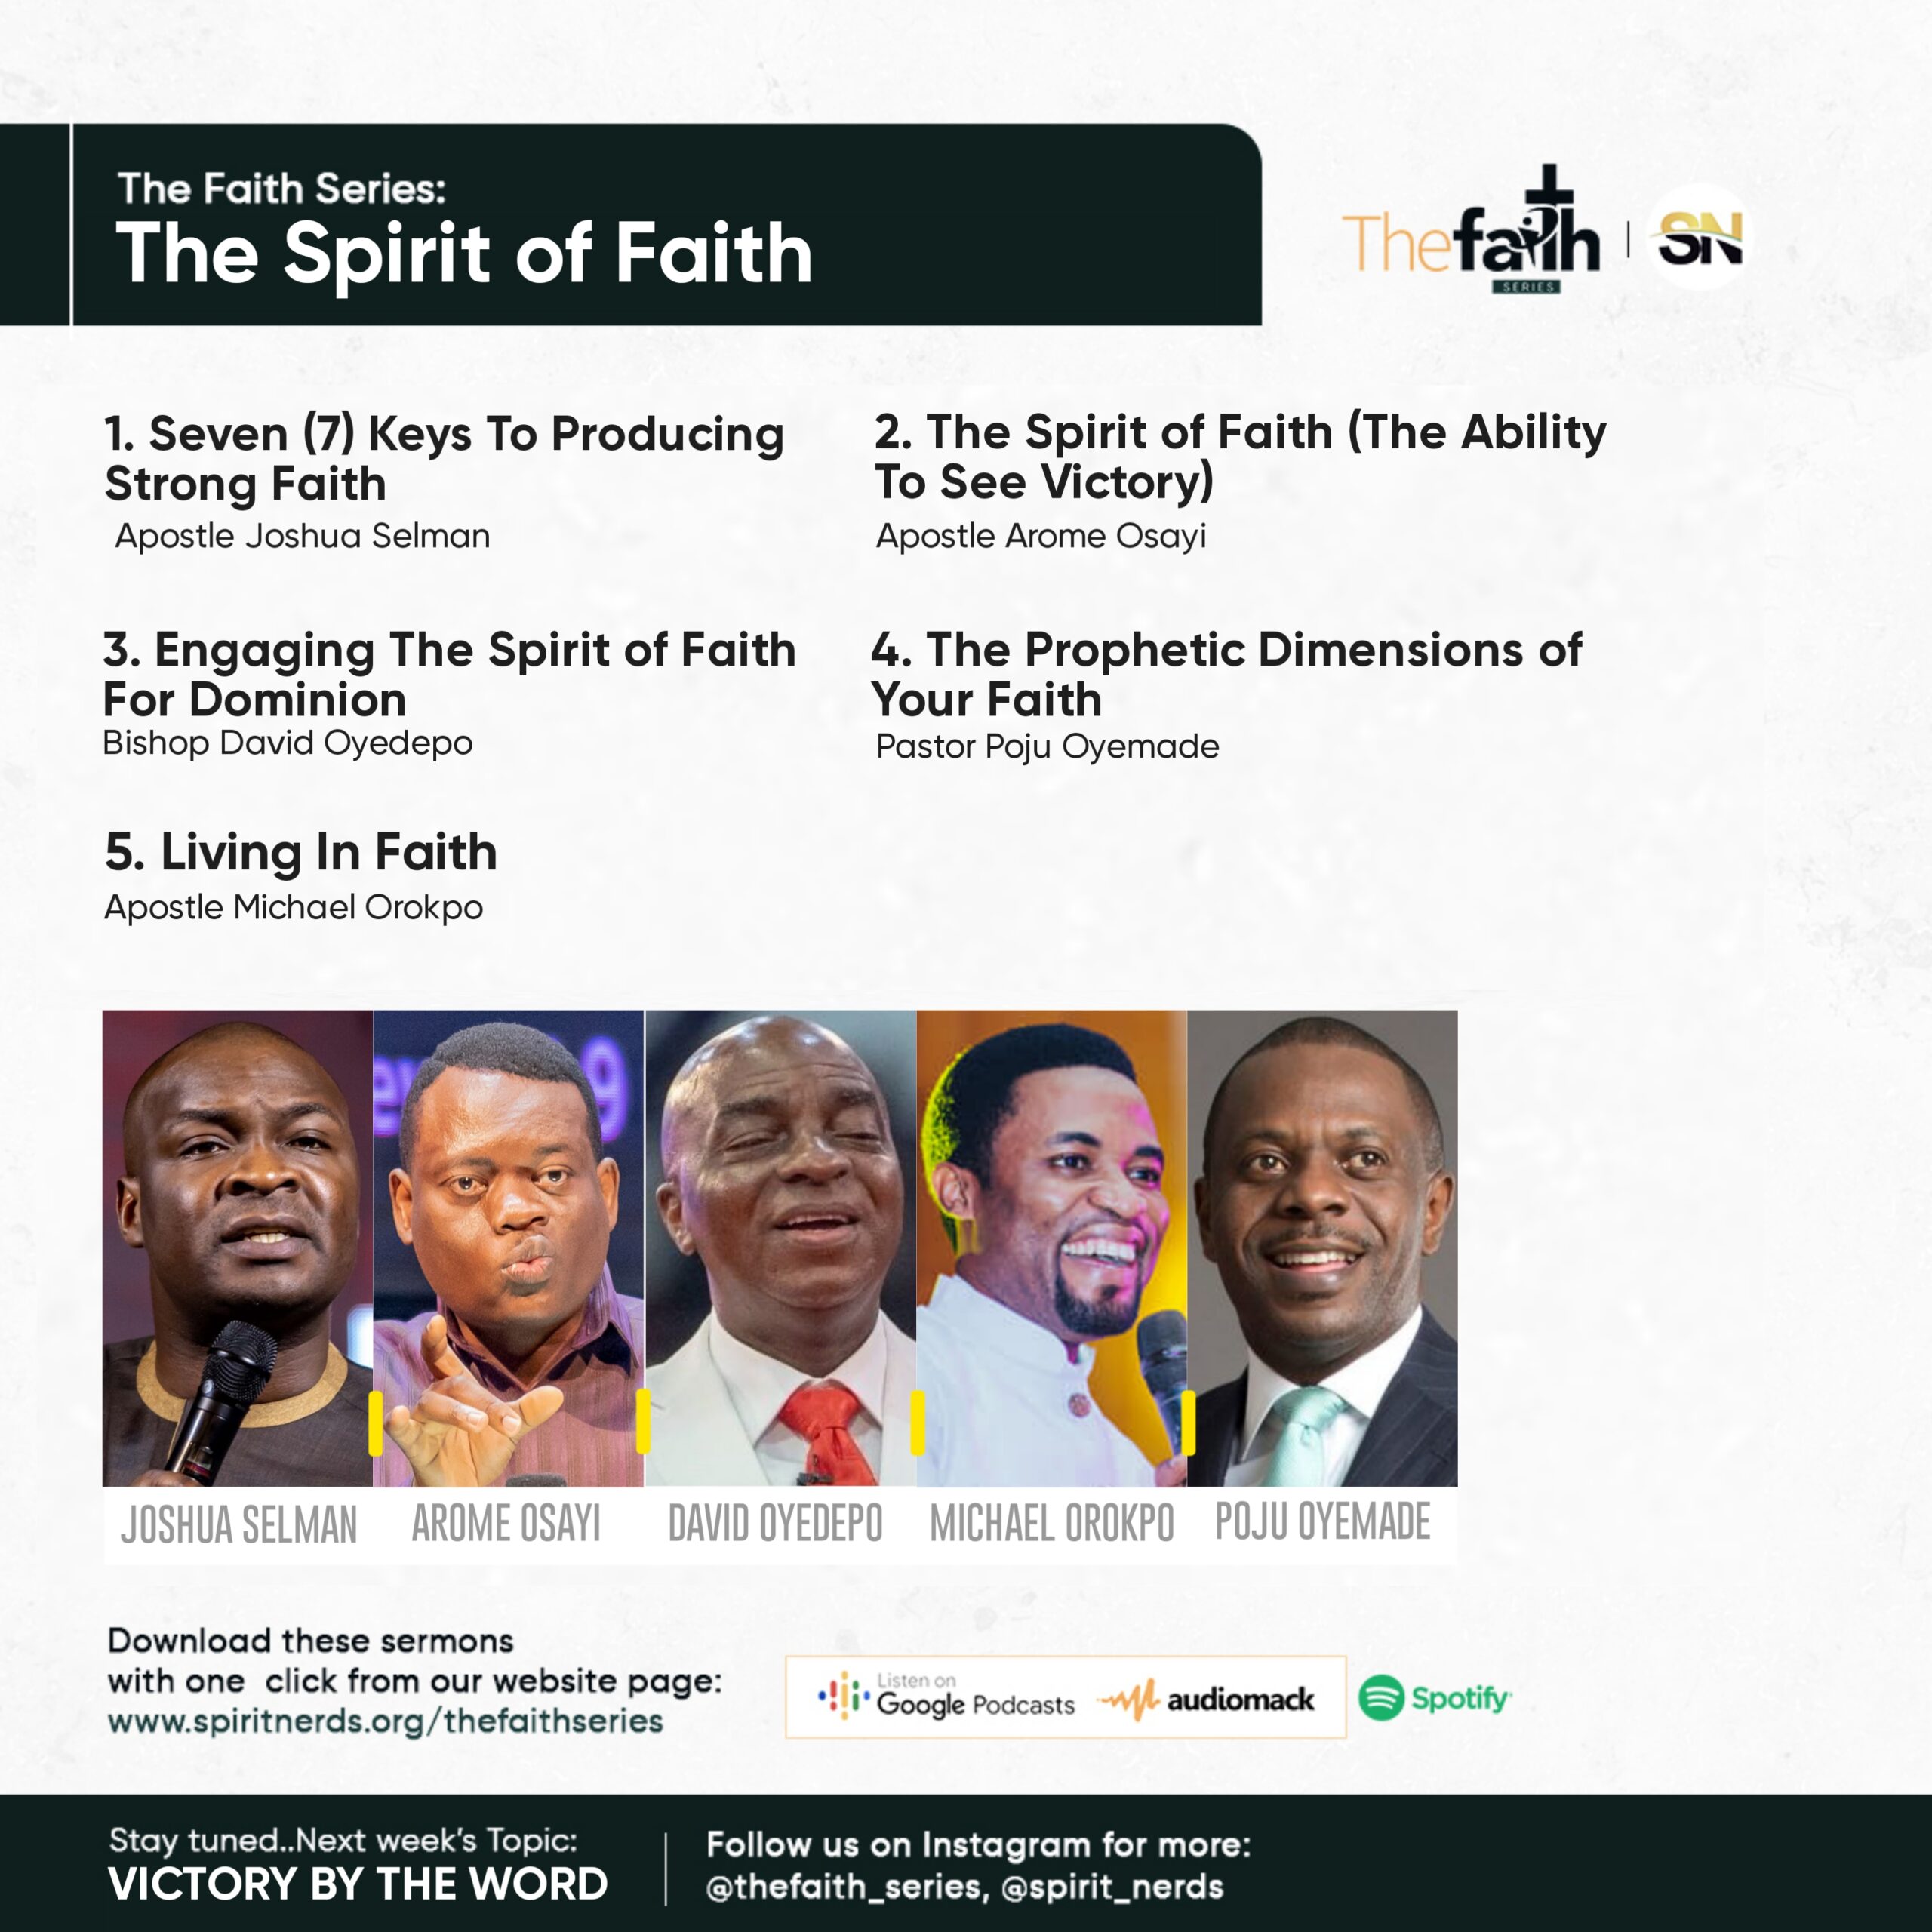 THE FAITH SERIES – The Spirit of Faith